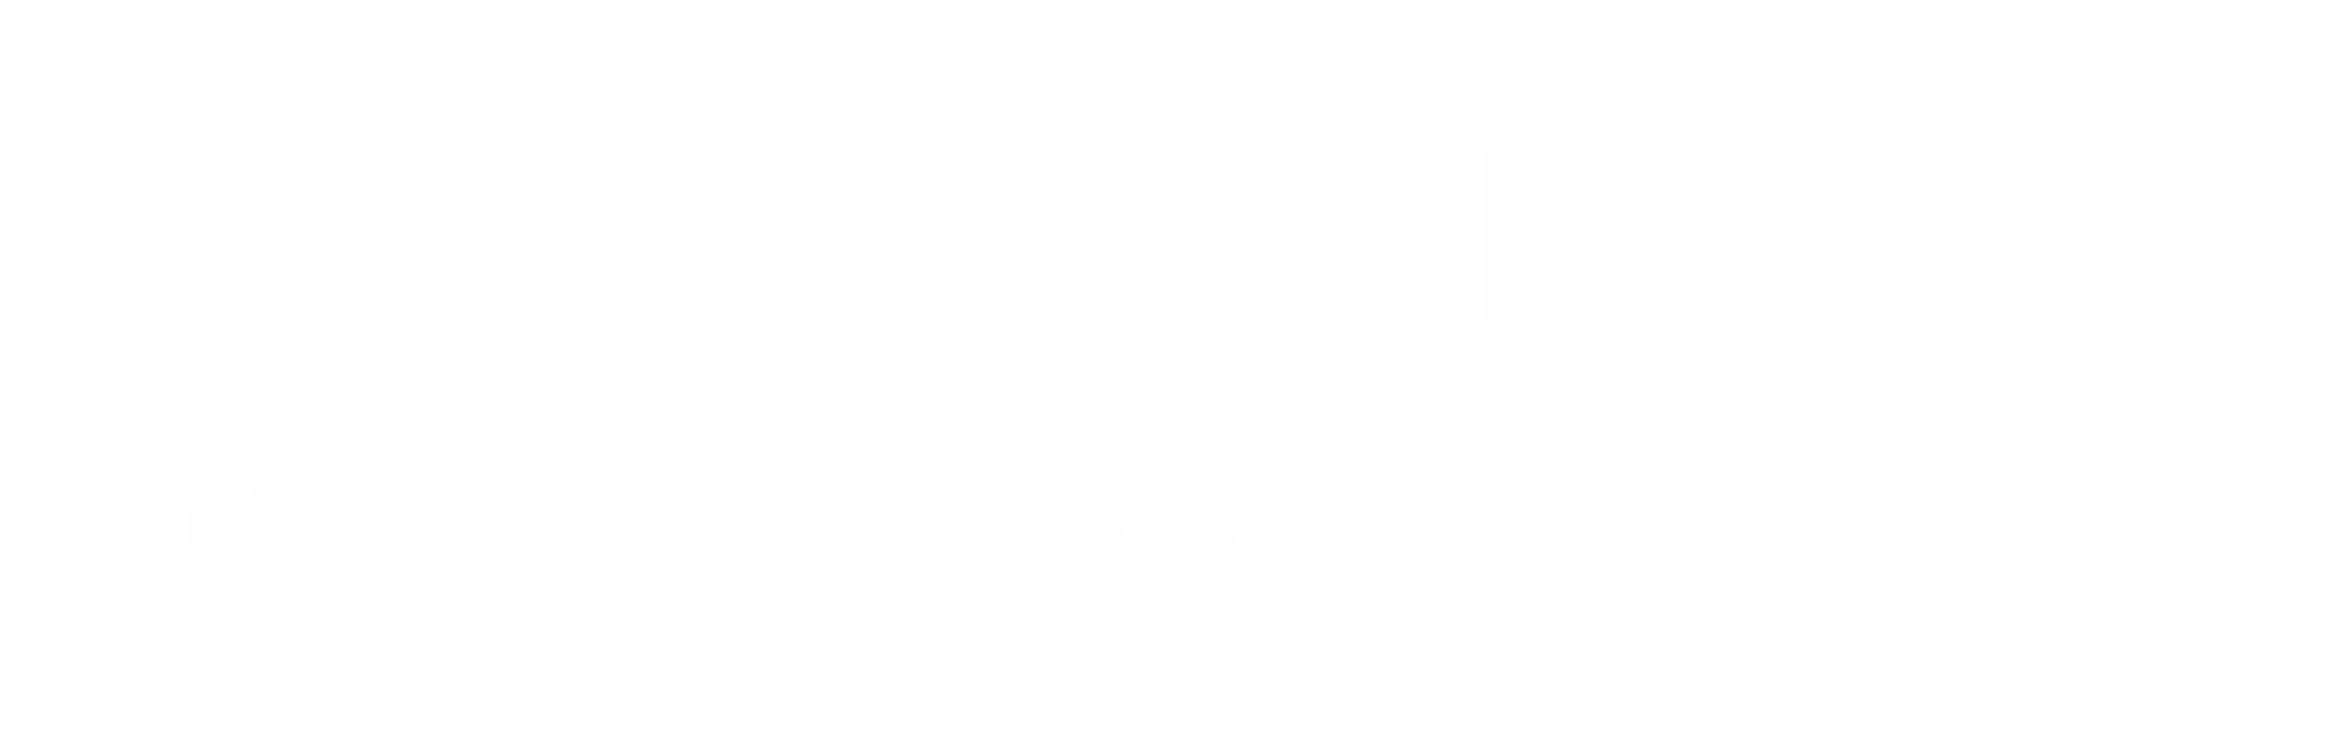 Barefoot Bungalow logo